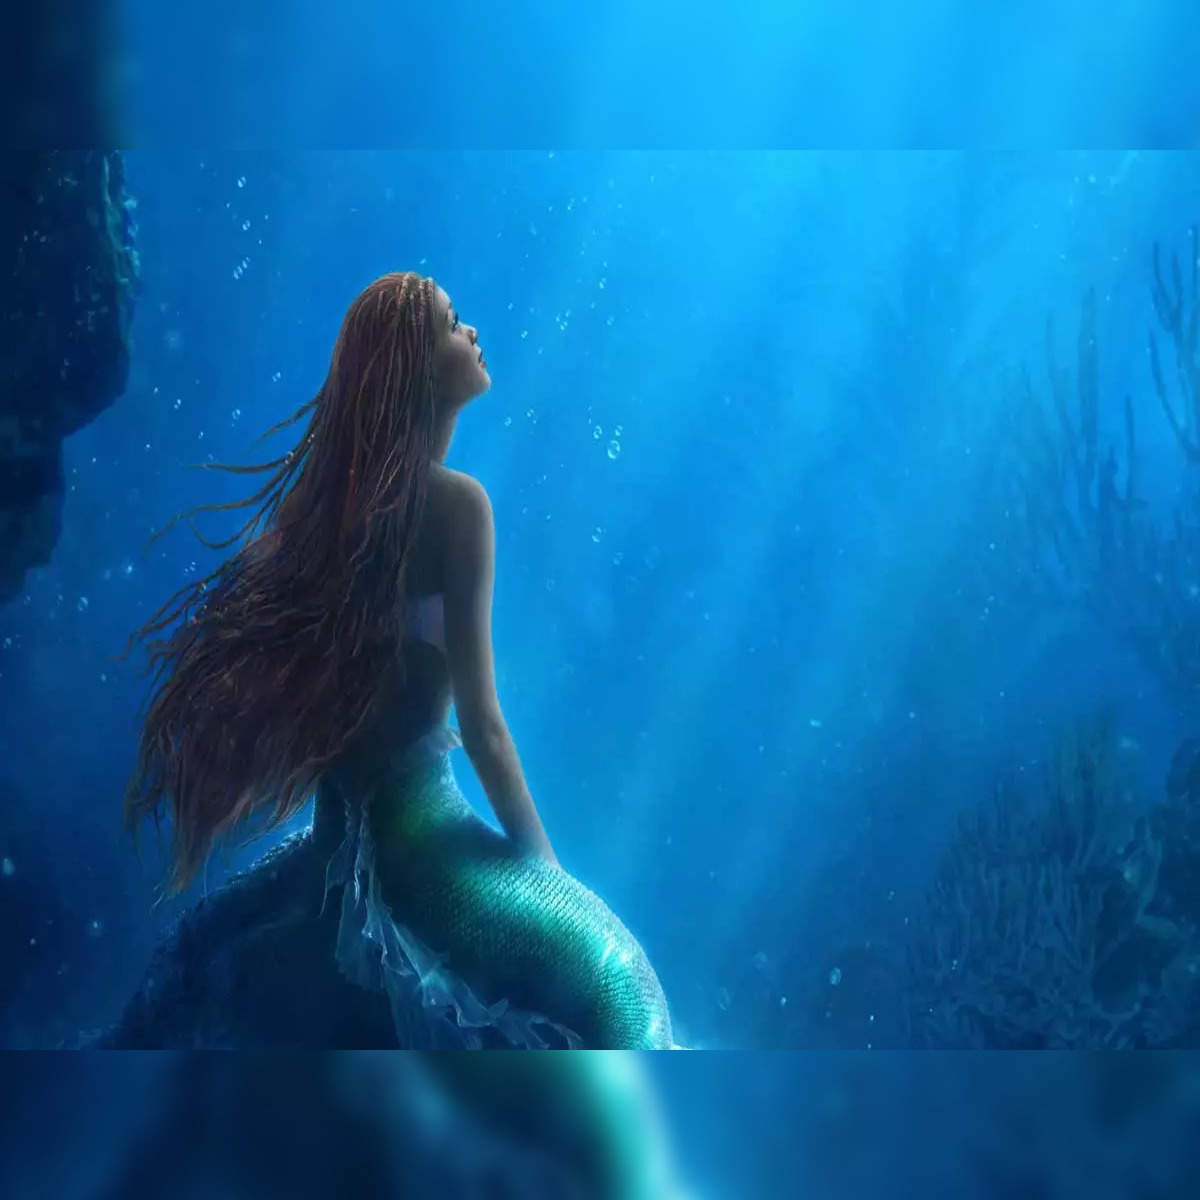 Mako Mermaids: Where to Watch and Stream Online